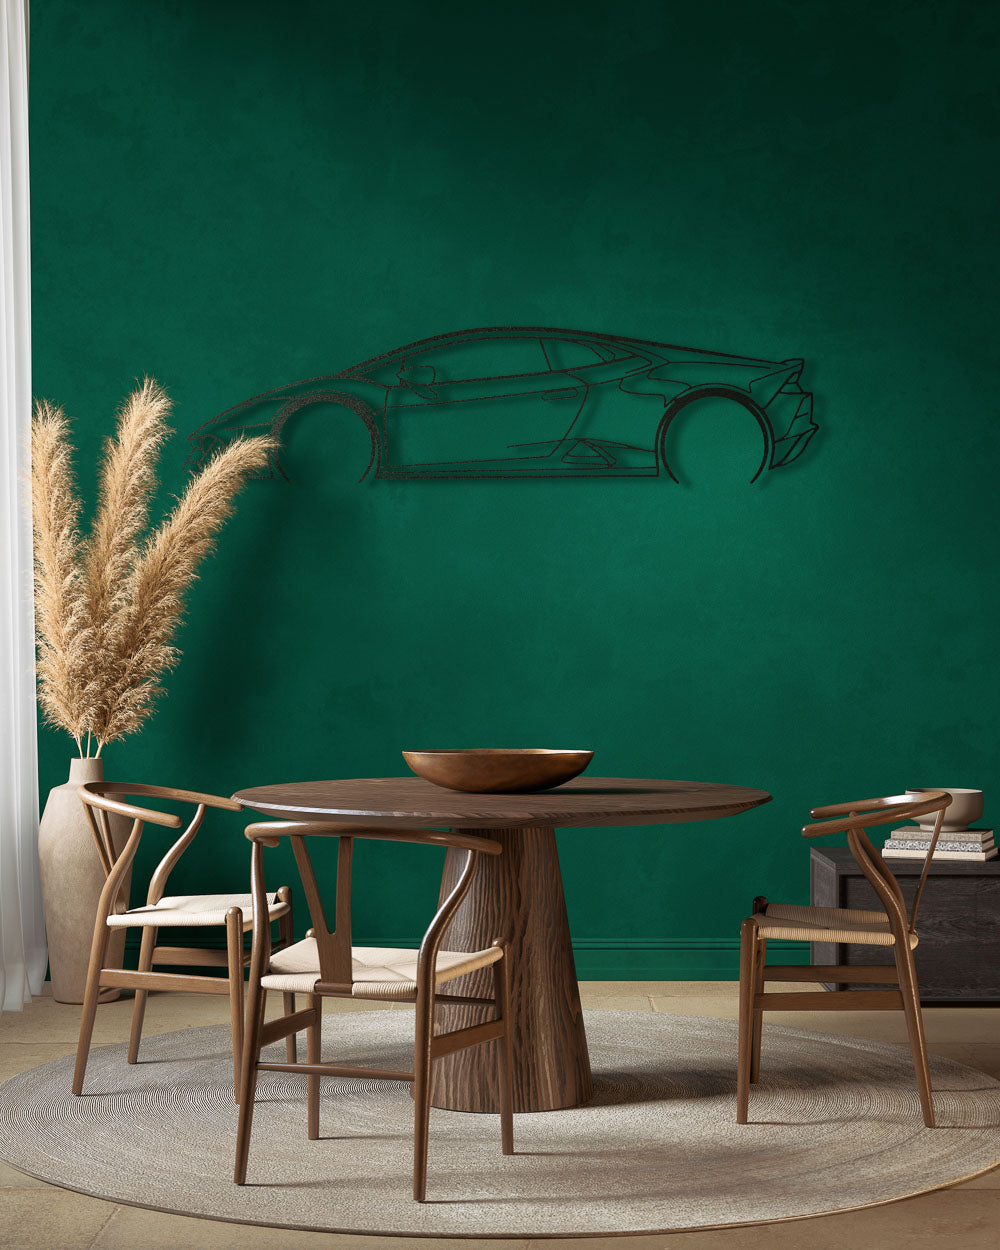 Nos - Lamborghini Huracan - Sagoma in Metallo di Design Dettagliata